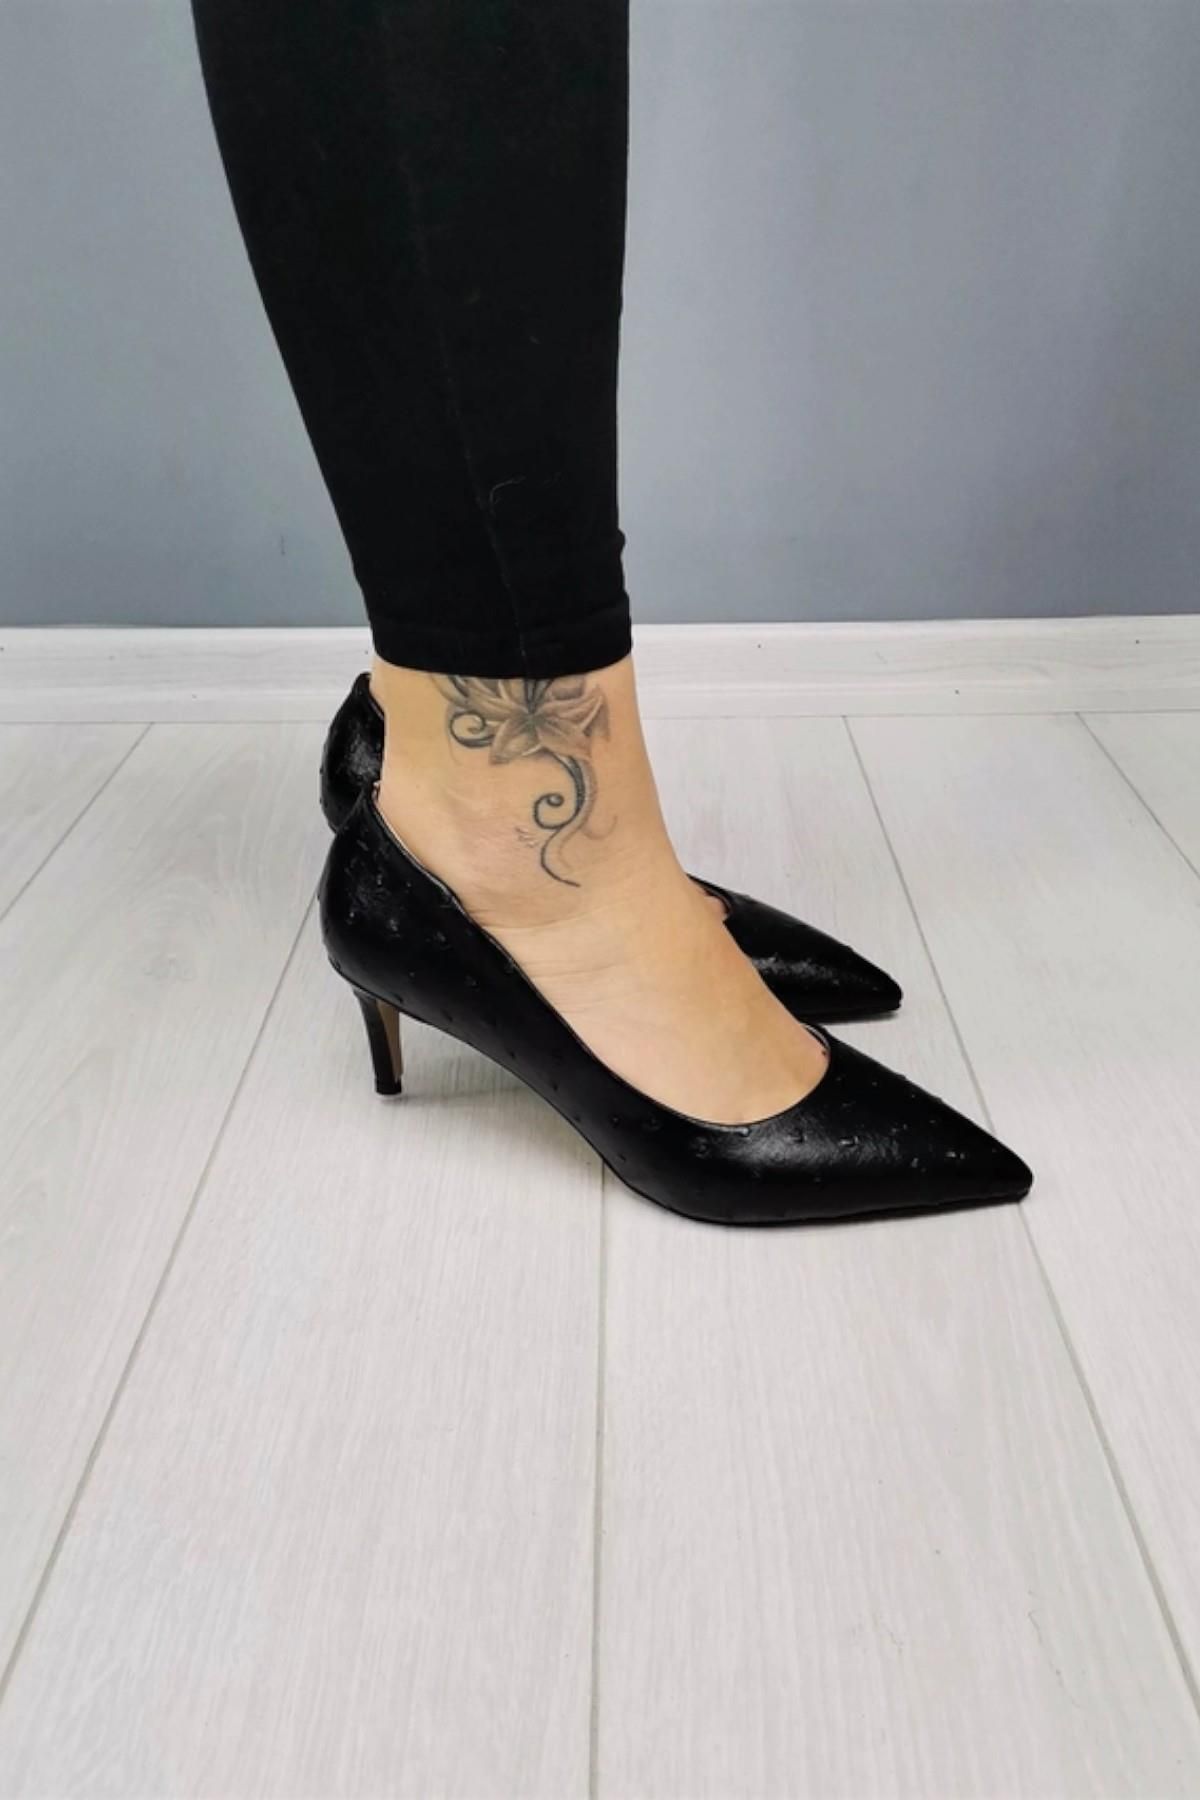 CassidoShoes Özel Tasarım Devekuşu Baskılı Siyah Kısa Topuklu Ayakkabı Ve Çanta